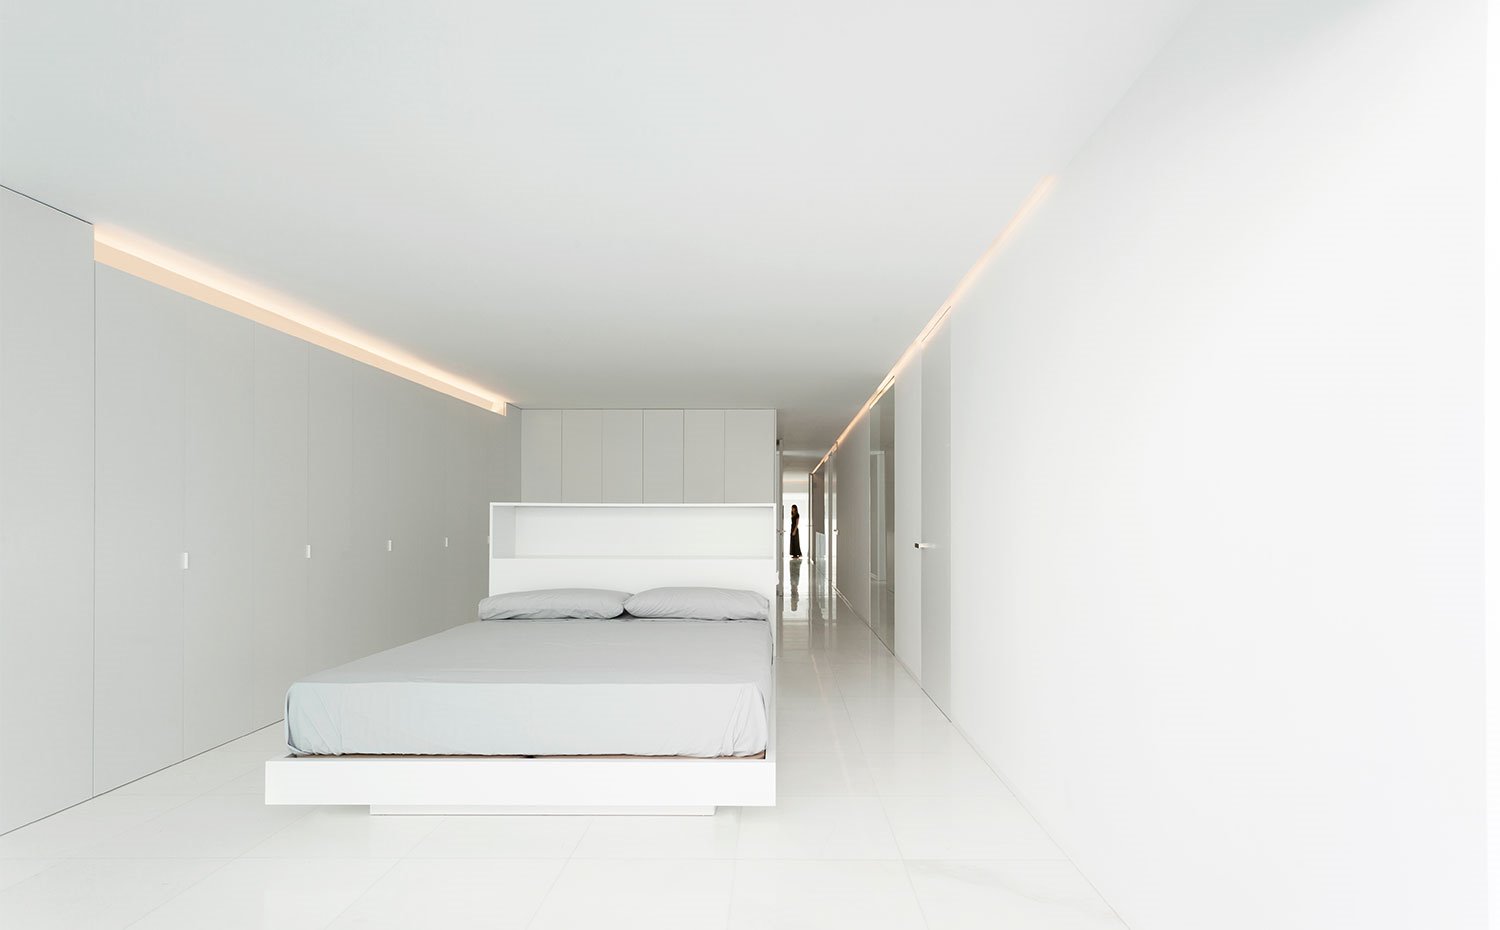 Dormitorio de gran profundidad con frente de armarios en blanco y estructura de cama a juego